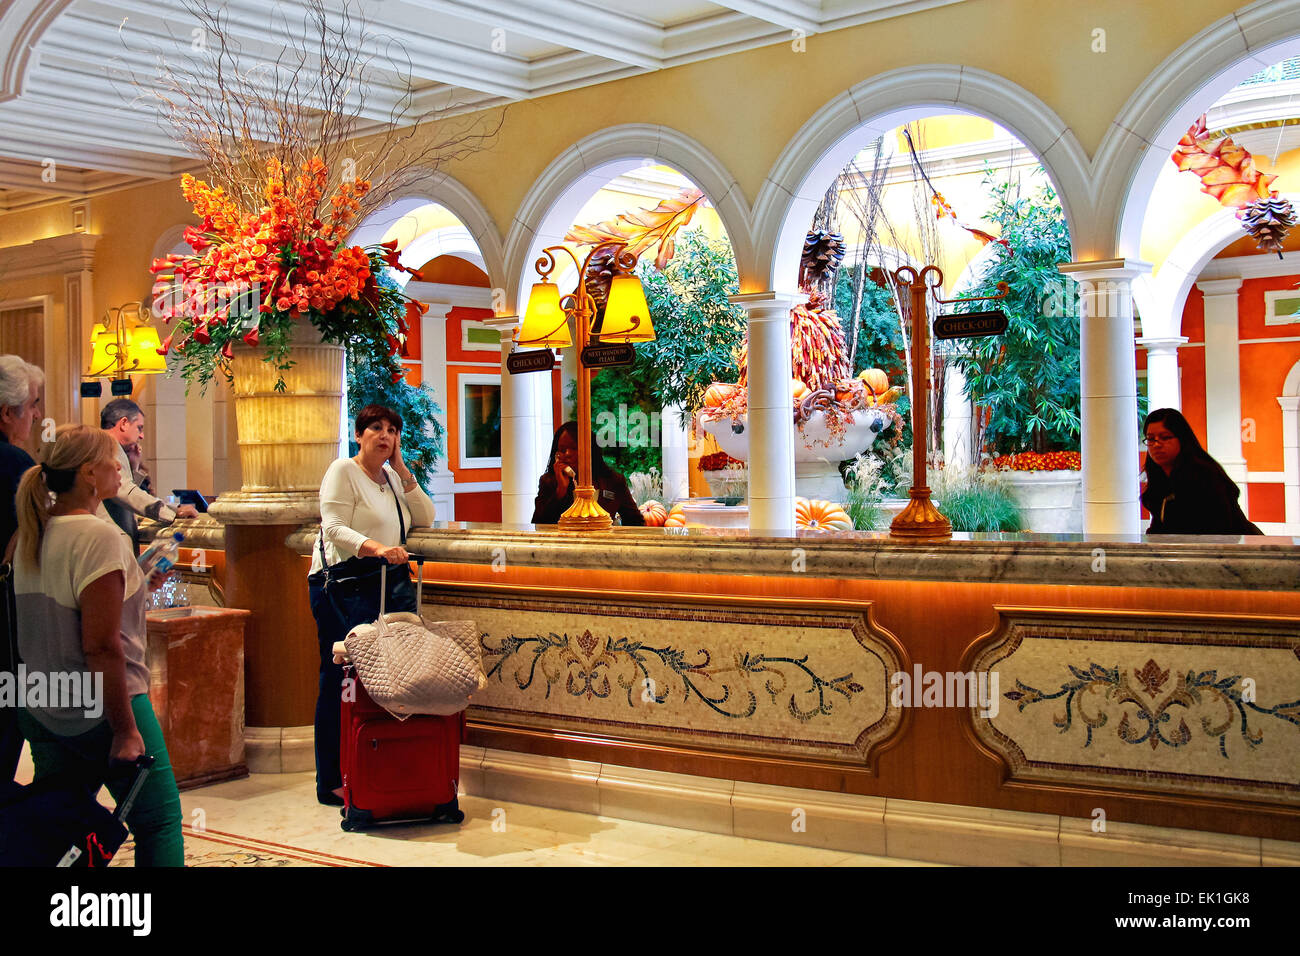 Las Vegas, Nevada, USA - 21. Oktober 2013: Lobby im Bellagio Hotel in Las Vegas Bellagio Hotel und Casino 1998 eröffnet. Das Luxushotel von mgm Erholungsorte besessen international Stockfoto